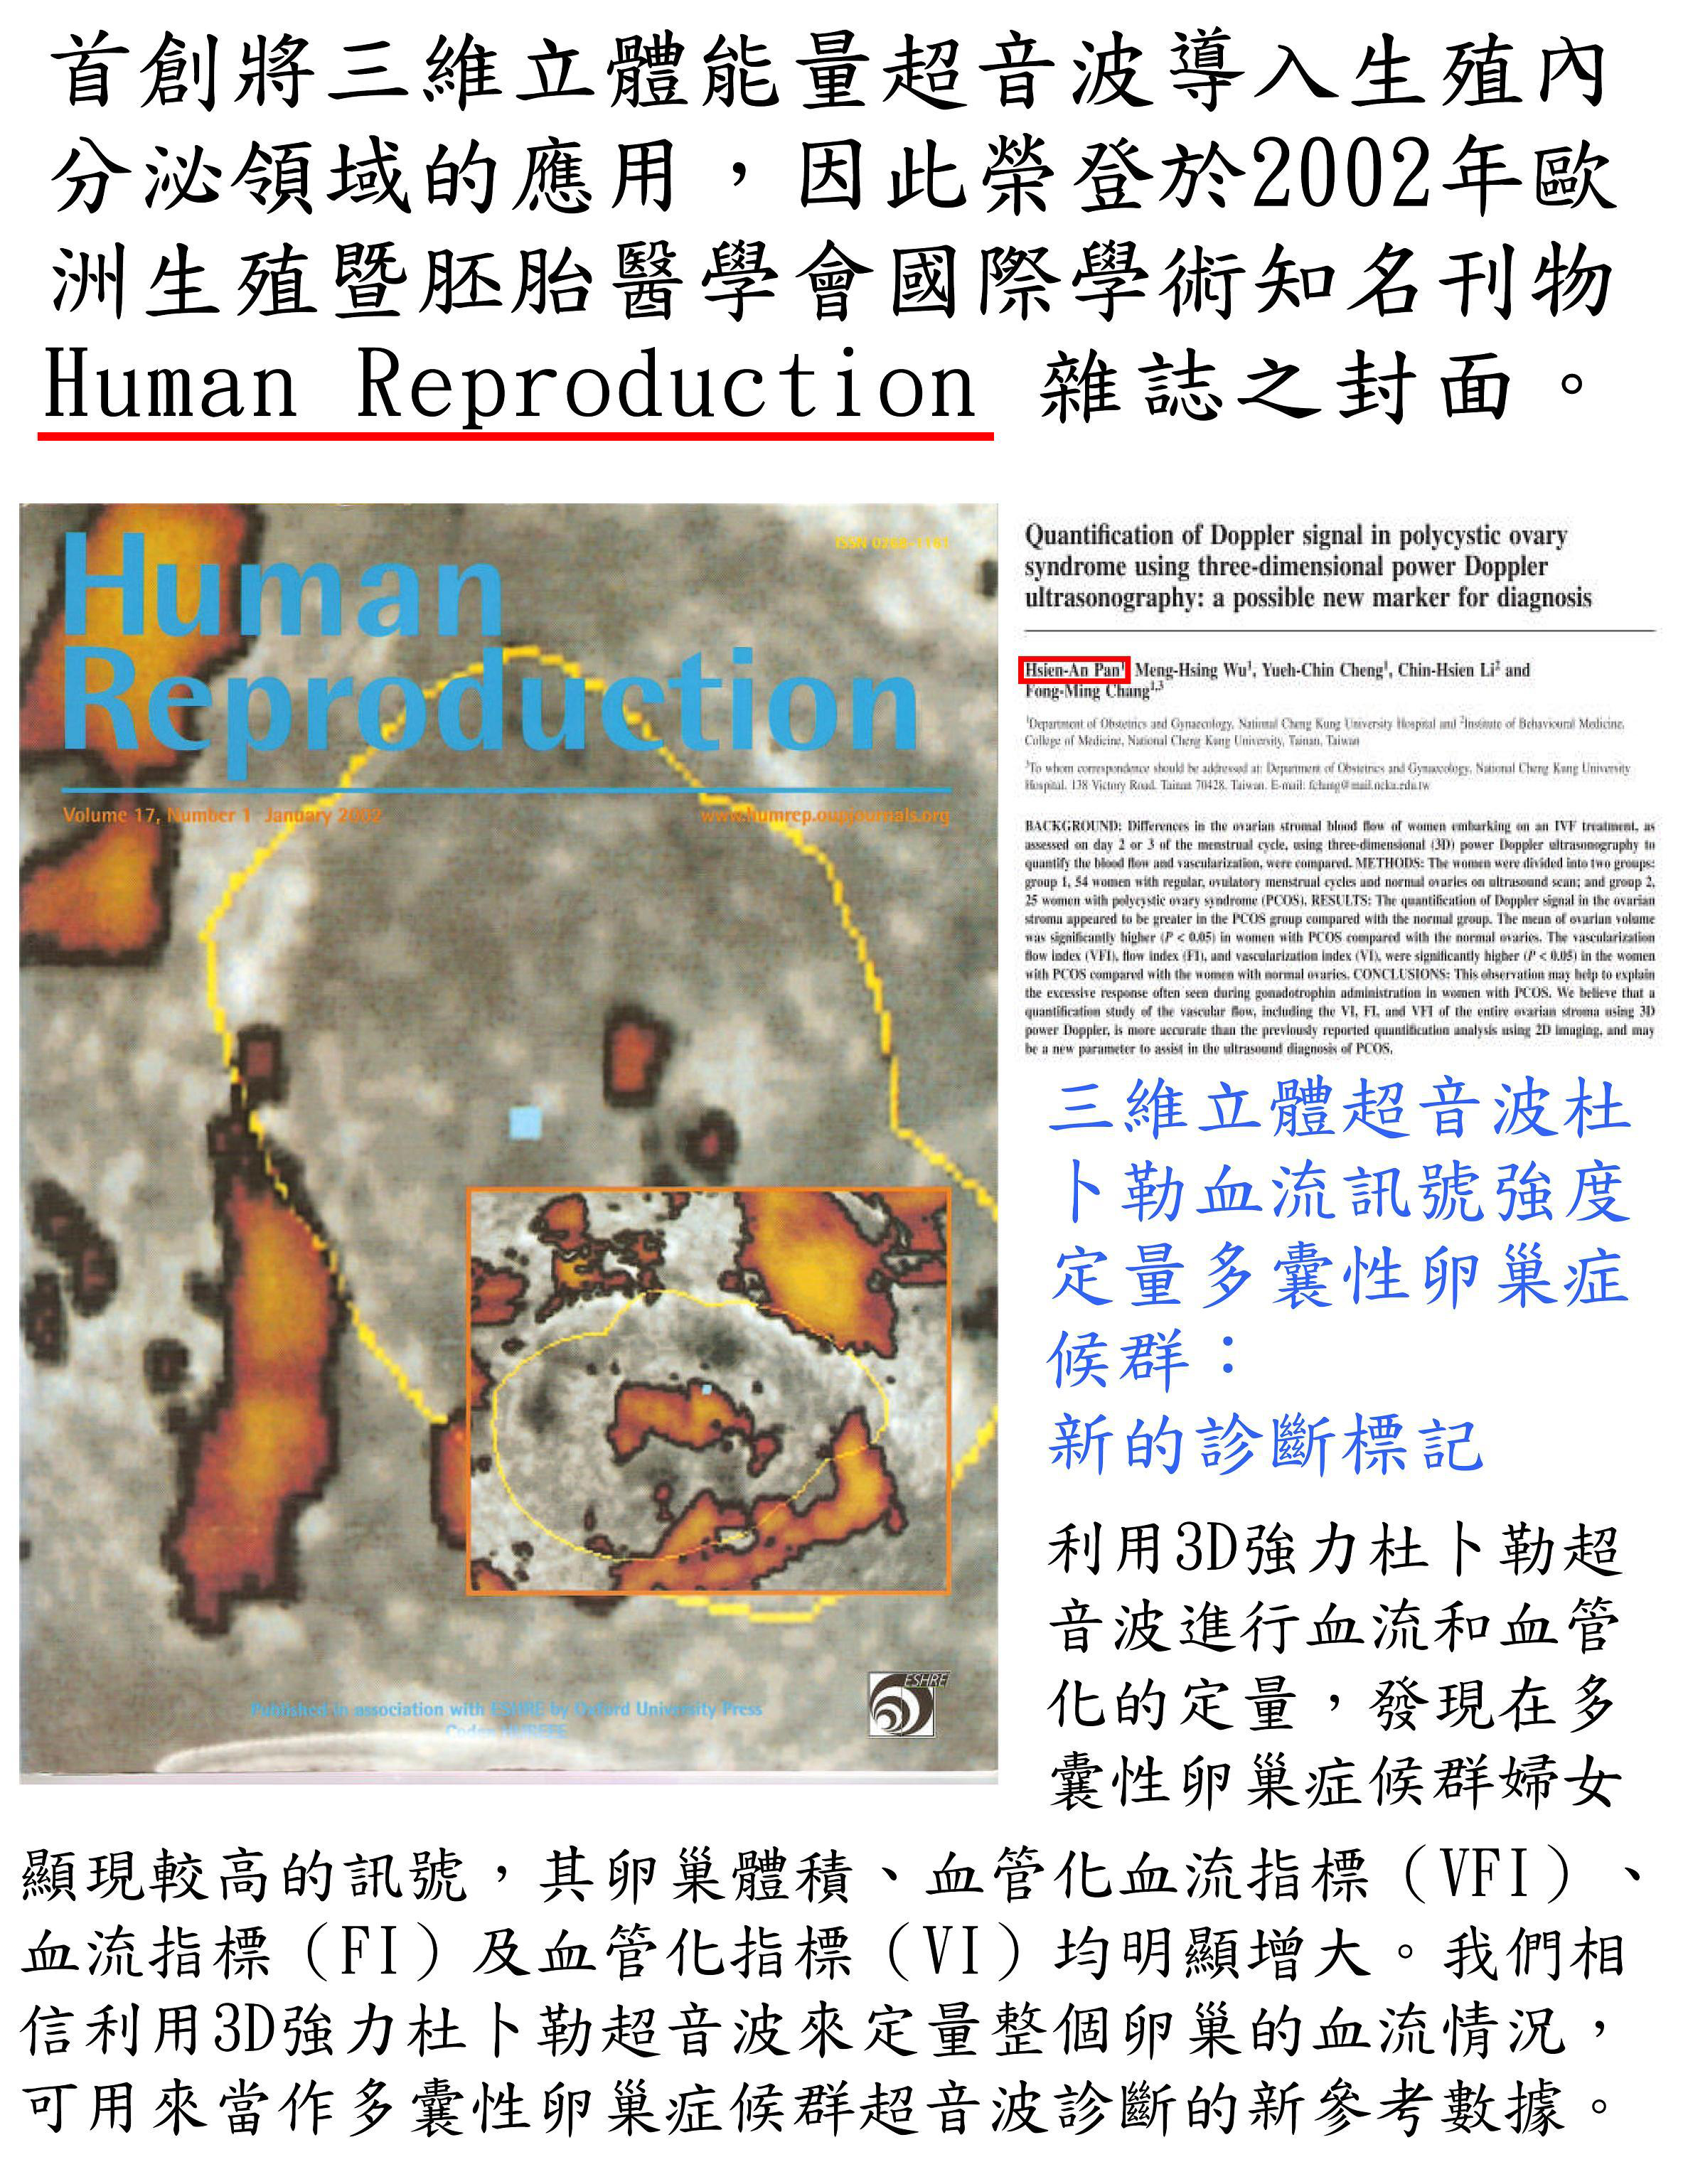 国际学术知名刊物Human Reproduction 杂志封面-安安试管婴儿中心